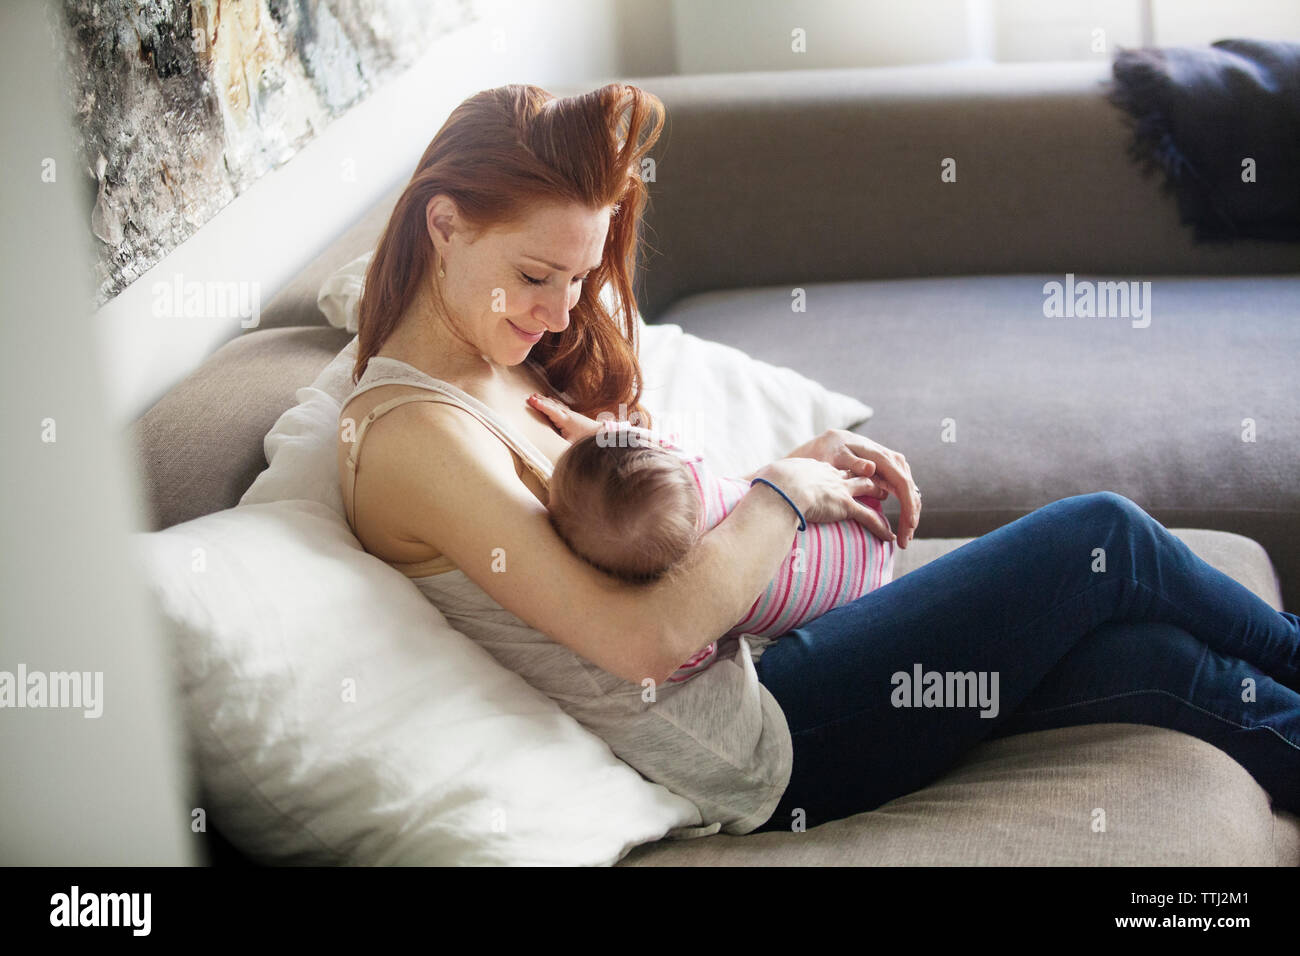 Heureux mère regardant bébé fille, assise sur un canapé Banque D'Images